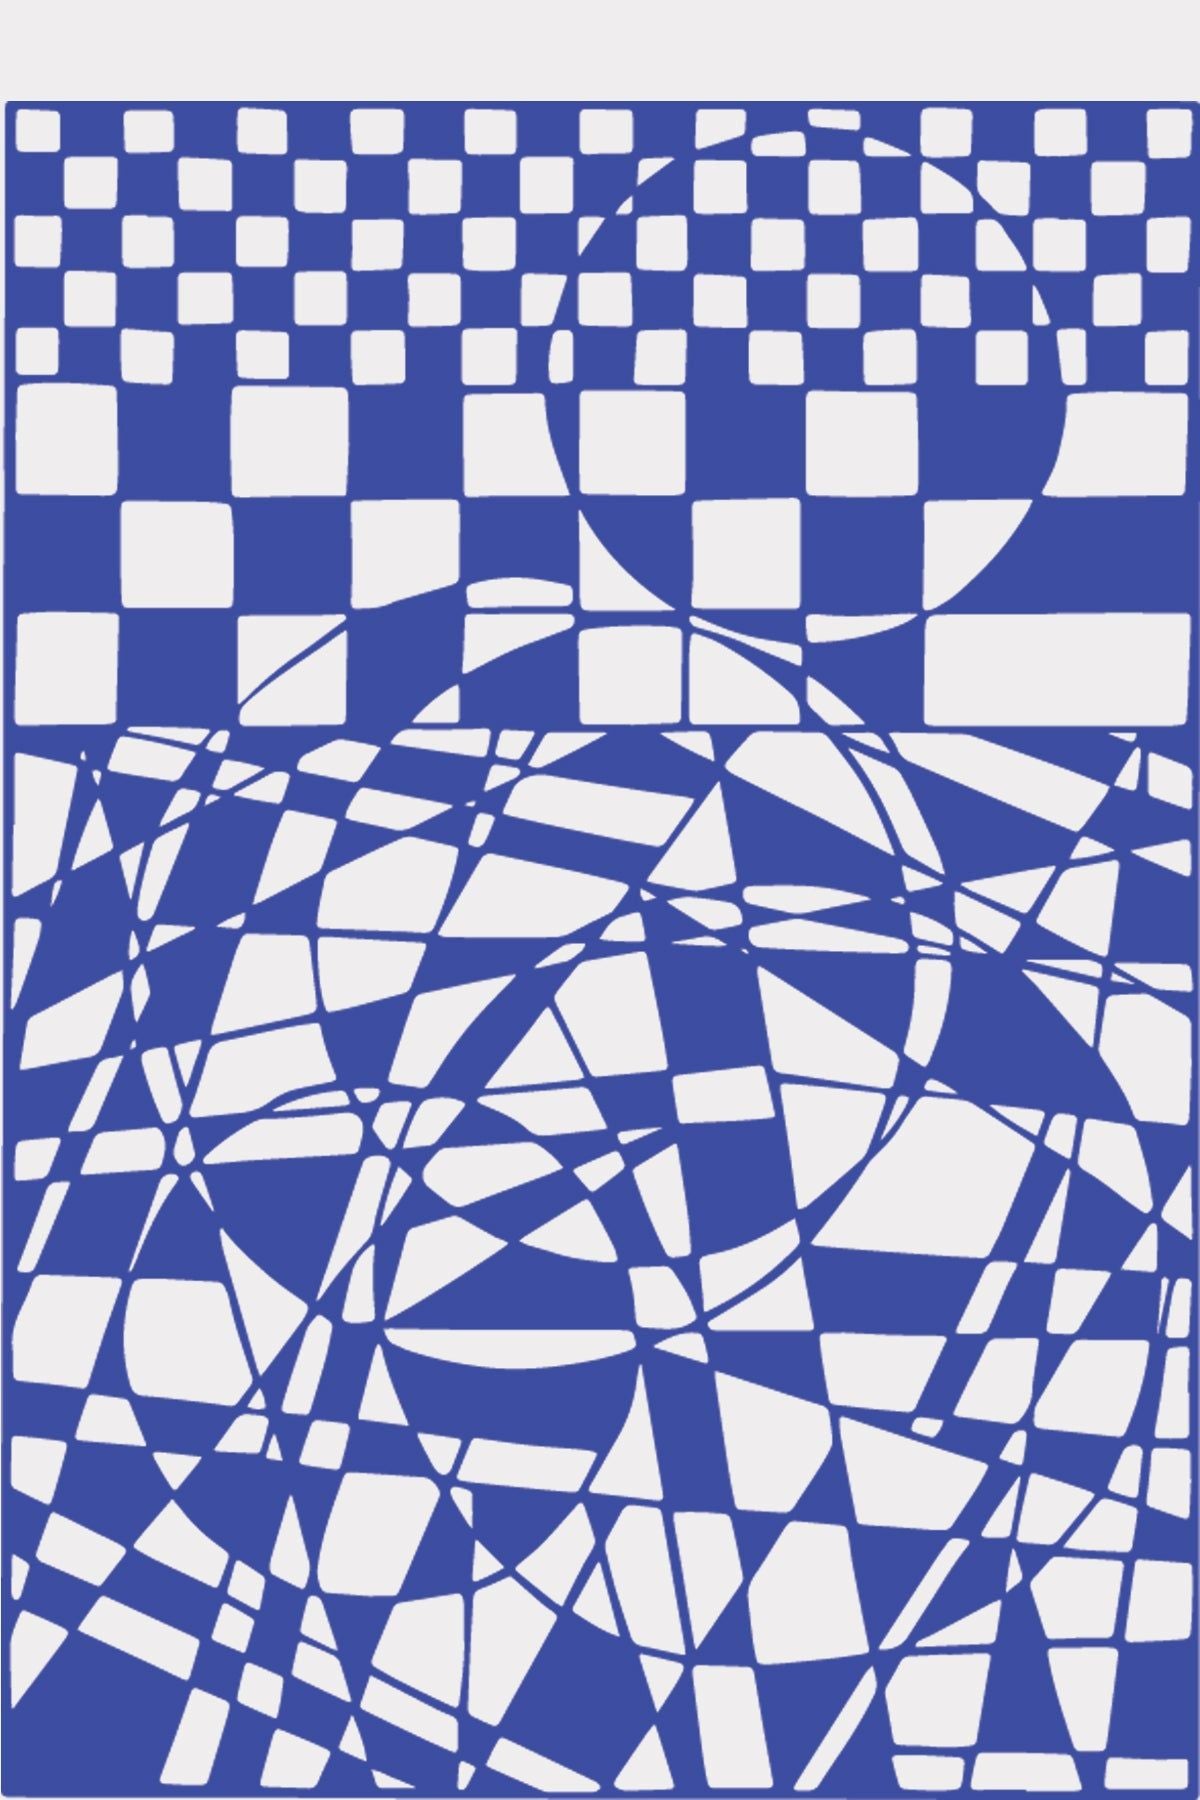 Studio over PaperCut A4 geometrische rechthoek, blauw